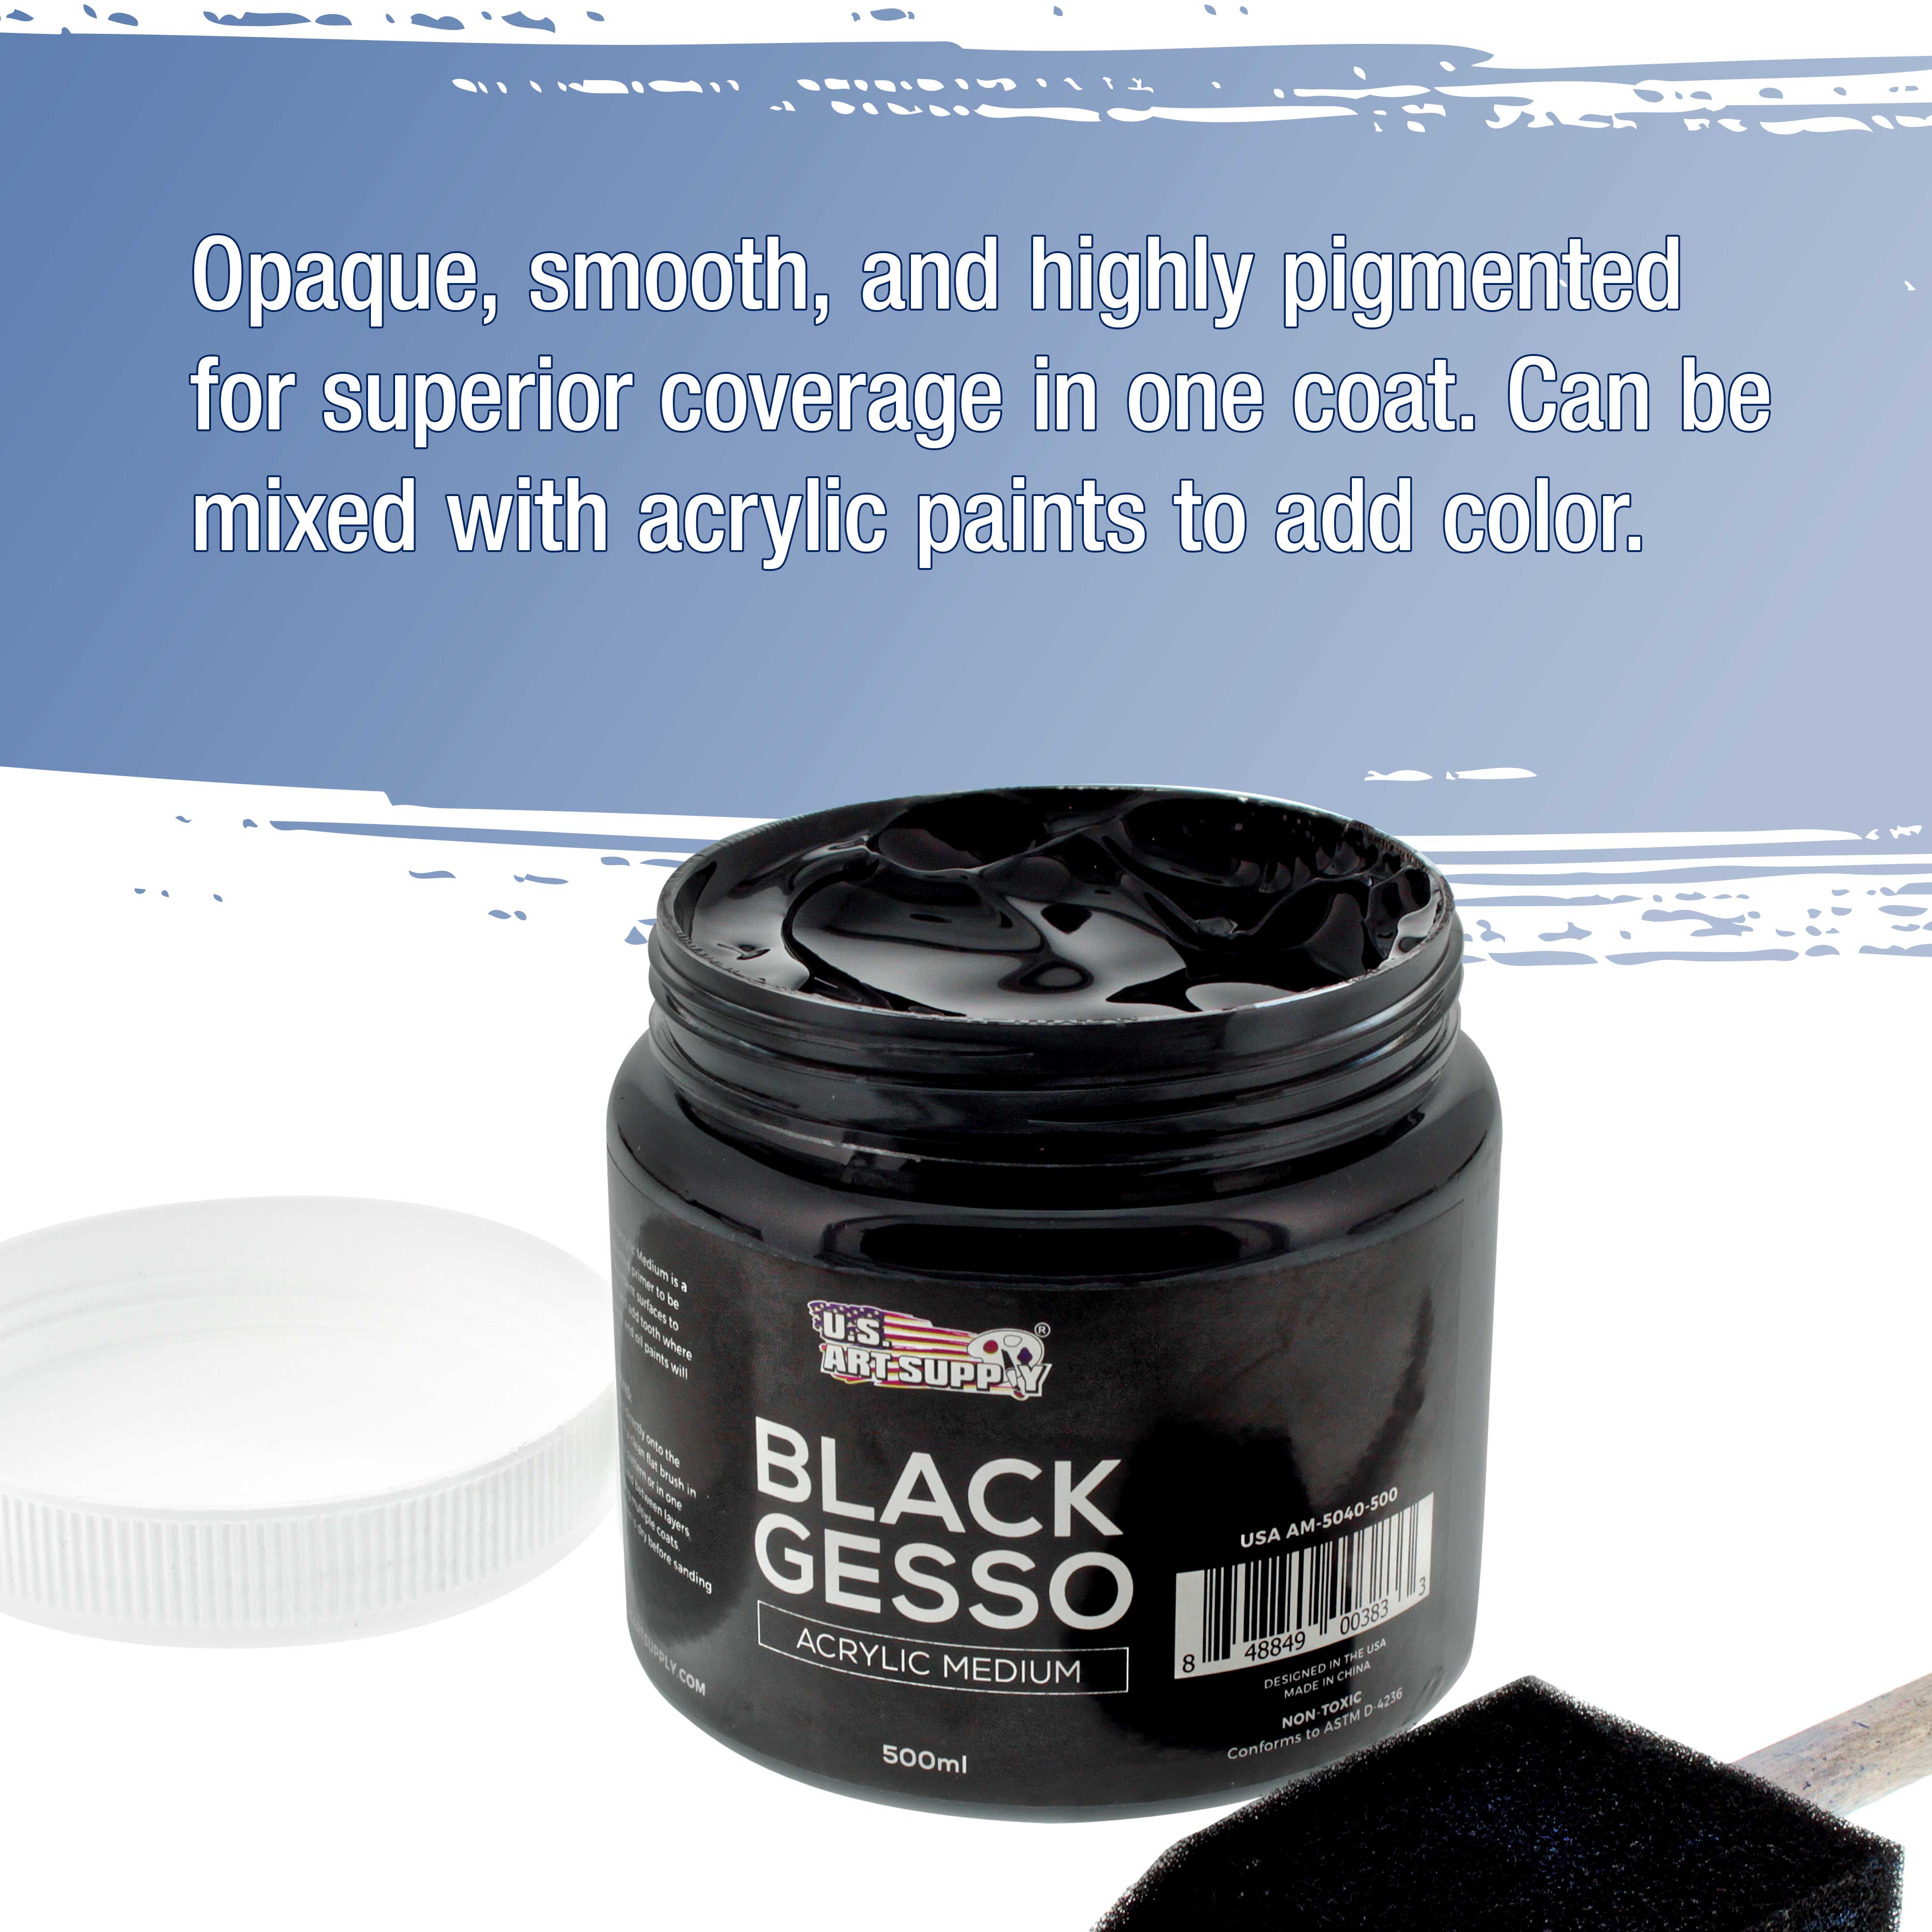 U.S. Art Supply Black Gesso Acrylic Medium, 500ml Tub